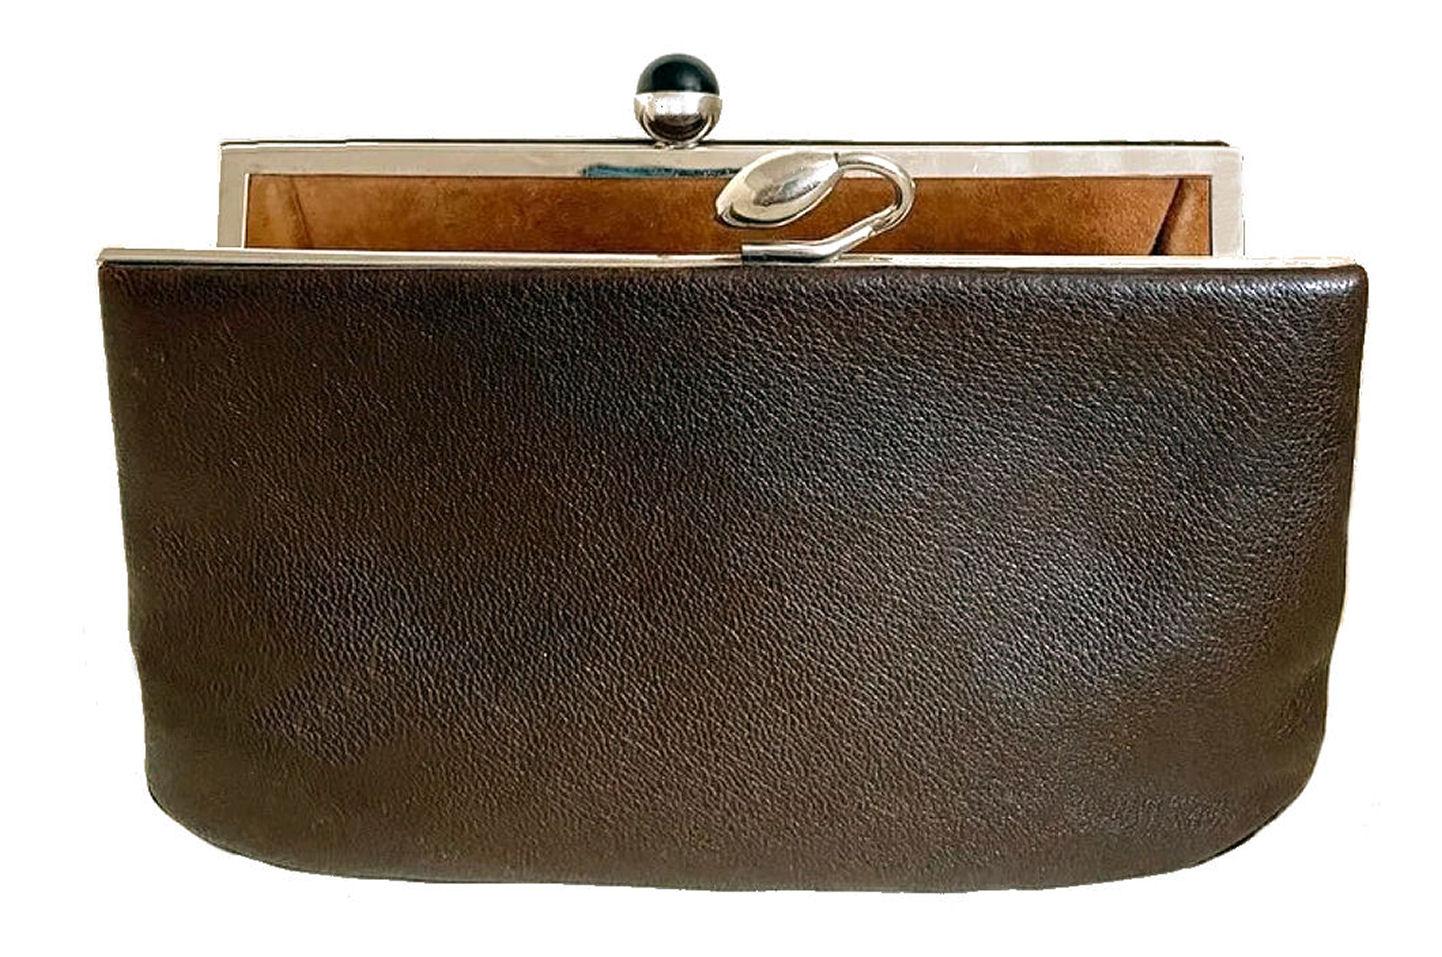 Art Deco Modernist Original Ladies Leather & Chrome Clutch bag Purse, c1930 For Sale 3